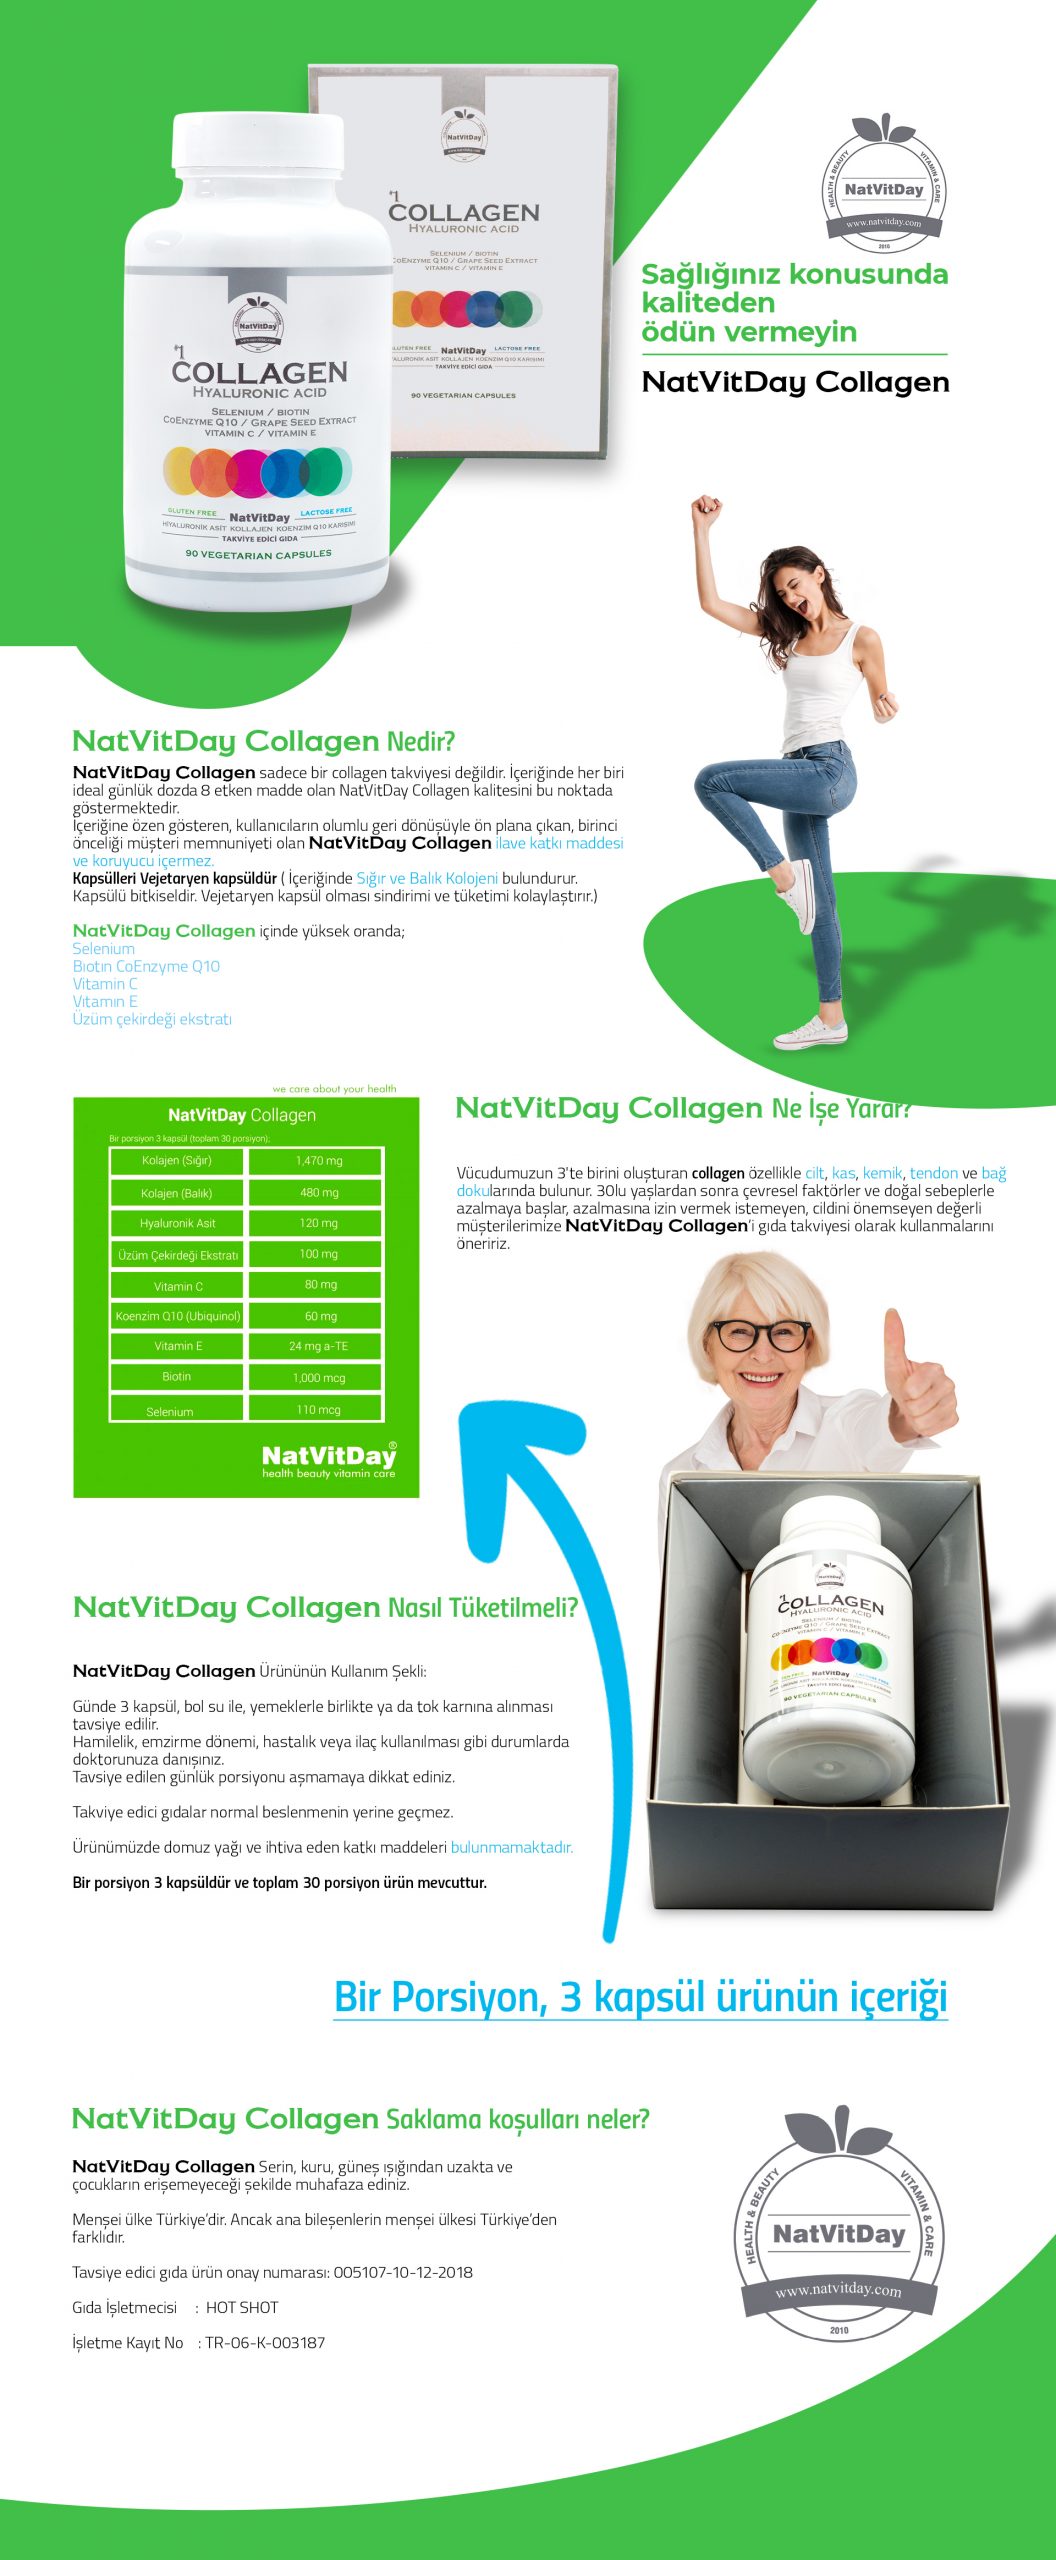 NatVitDay Collagen 